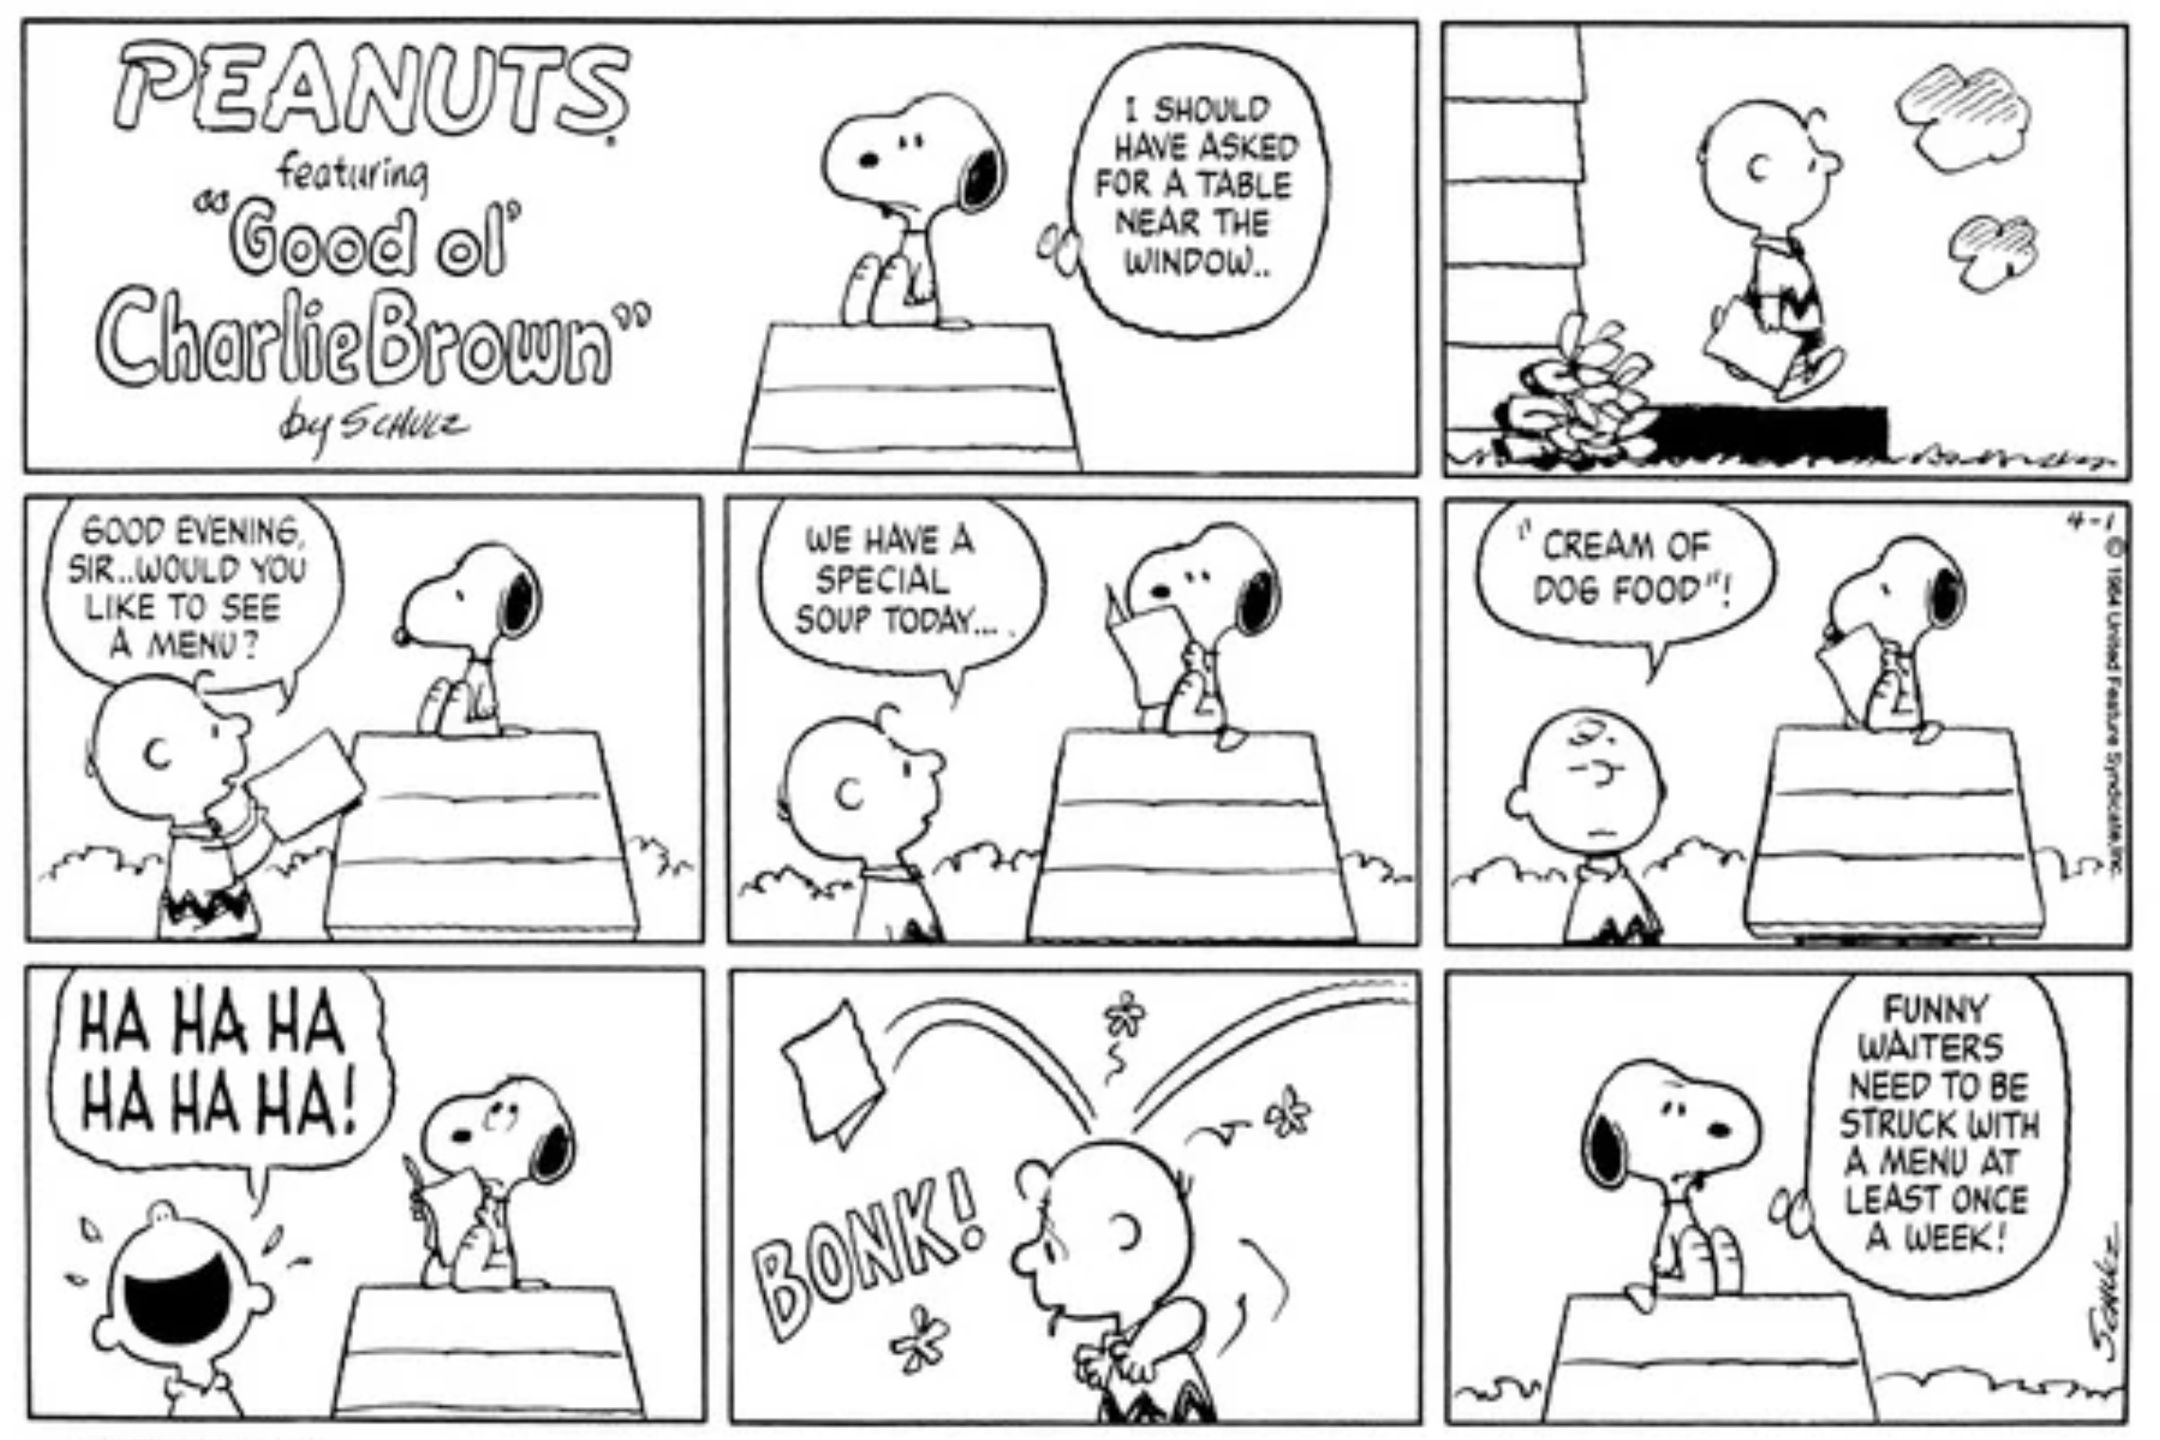 Snoopy throwing a menu at Charlie Brown in Peanuts.